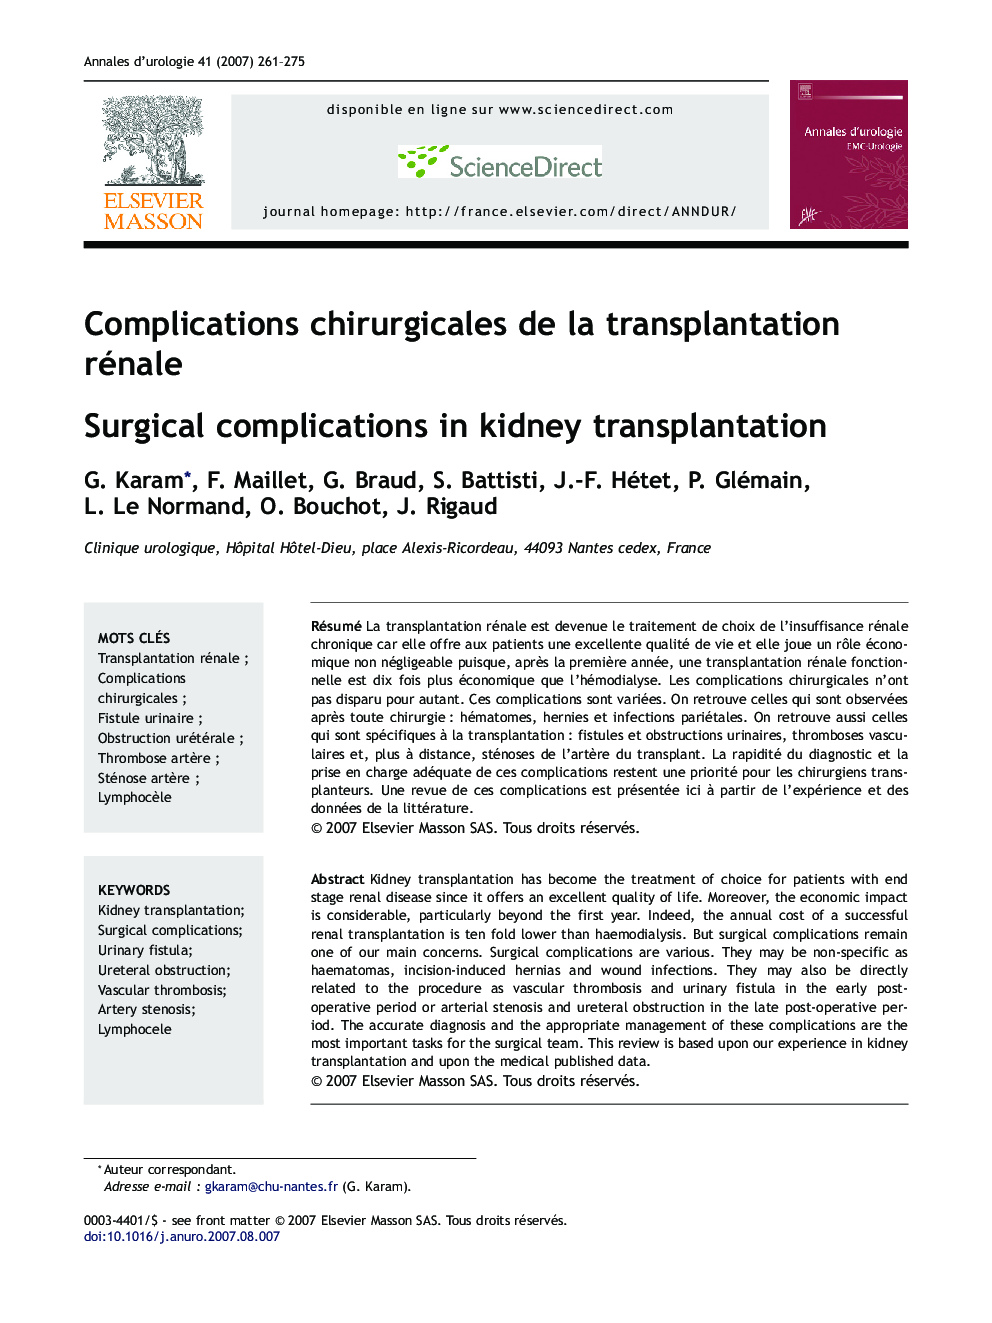 Complications chirurgicales de la transplantation rénale